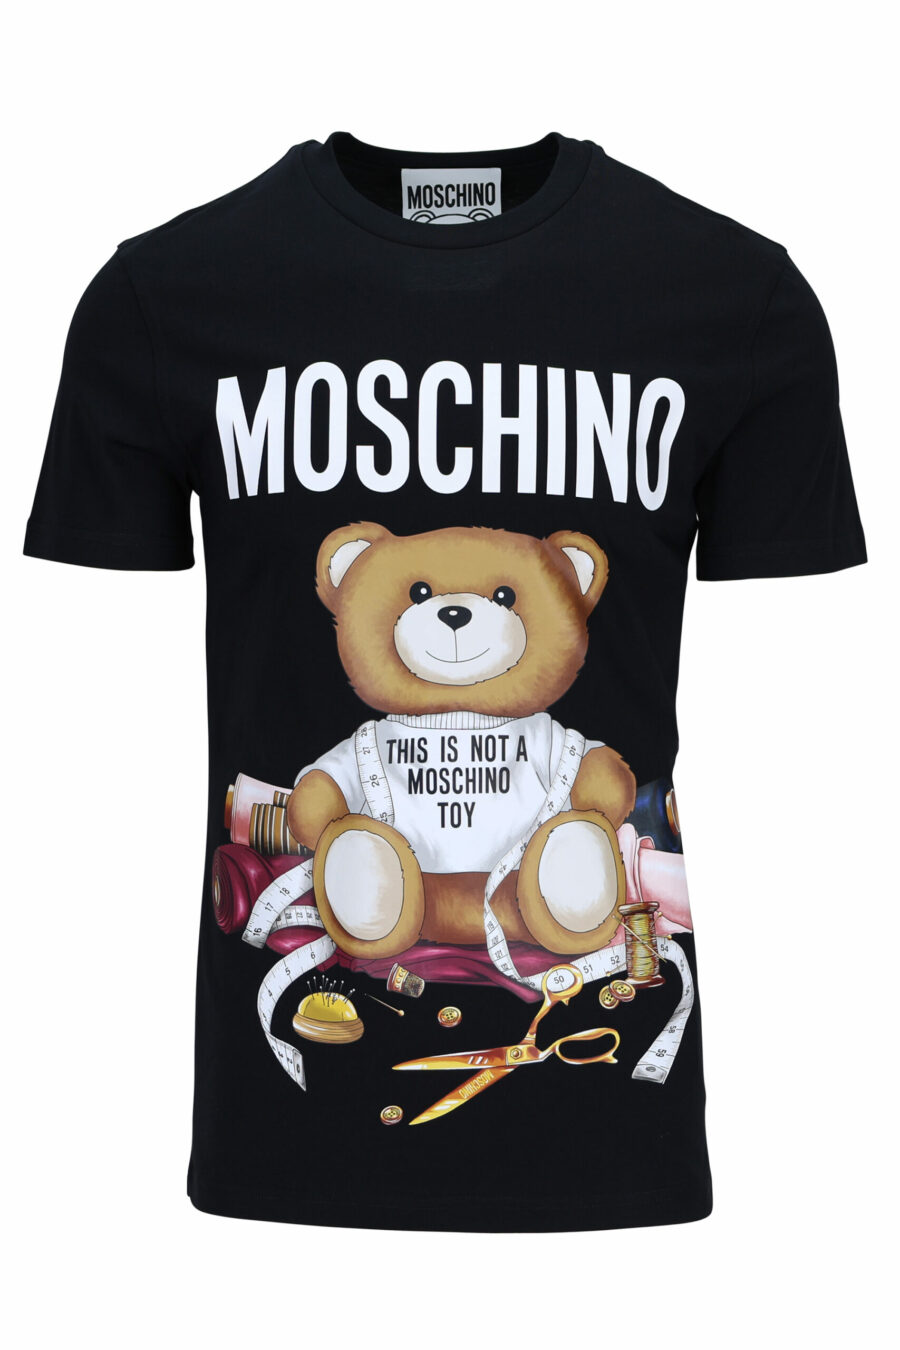 T-shirt preta com maxilogo de alfaiate "teddy" - 667113108032 1 à escala